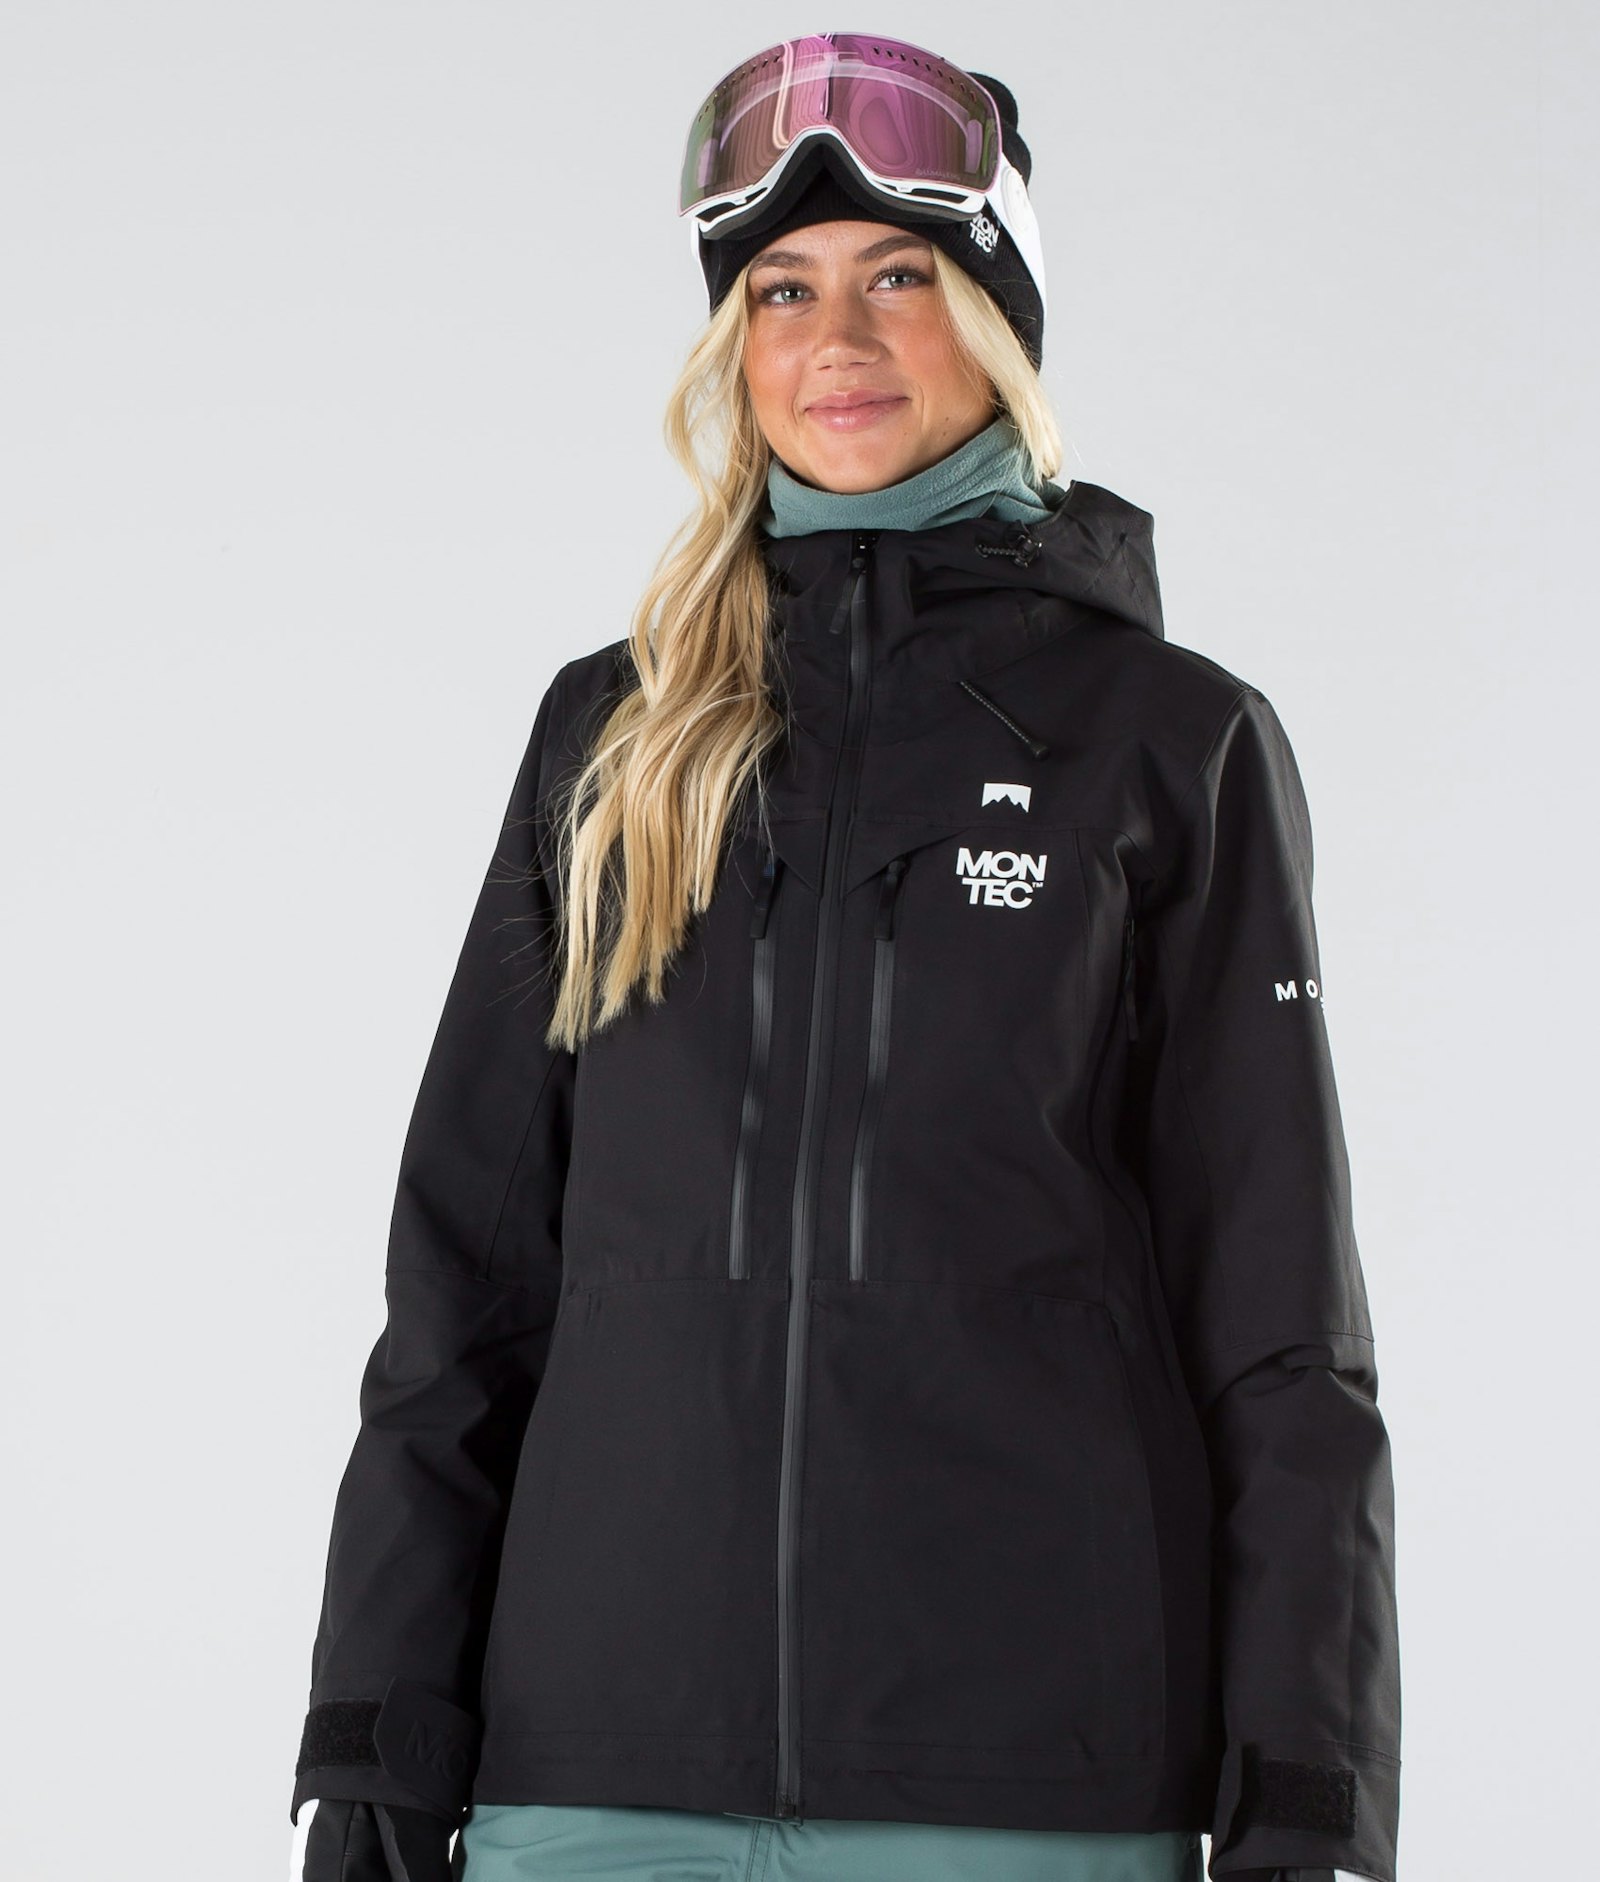 Moss W 2019 Snowboard Jacket Women Black Renewed